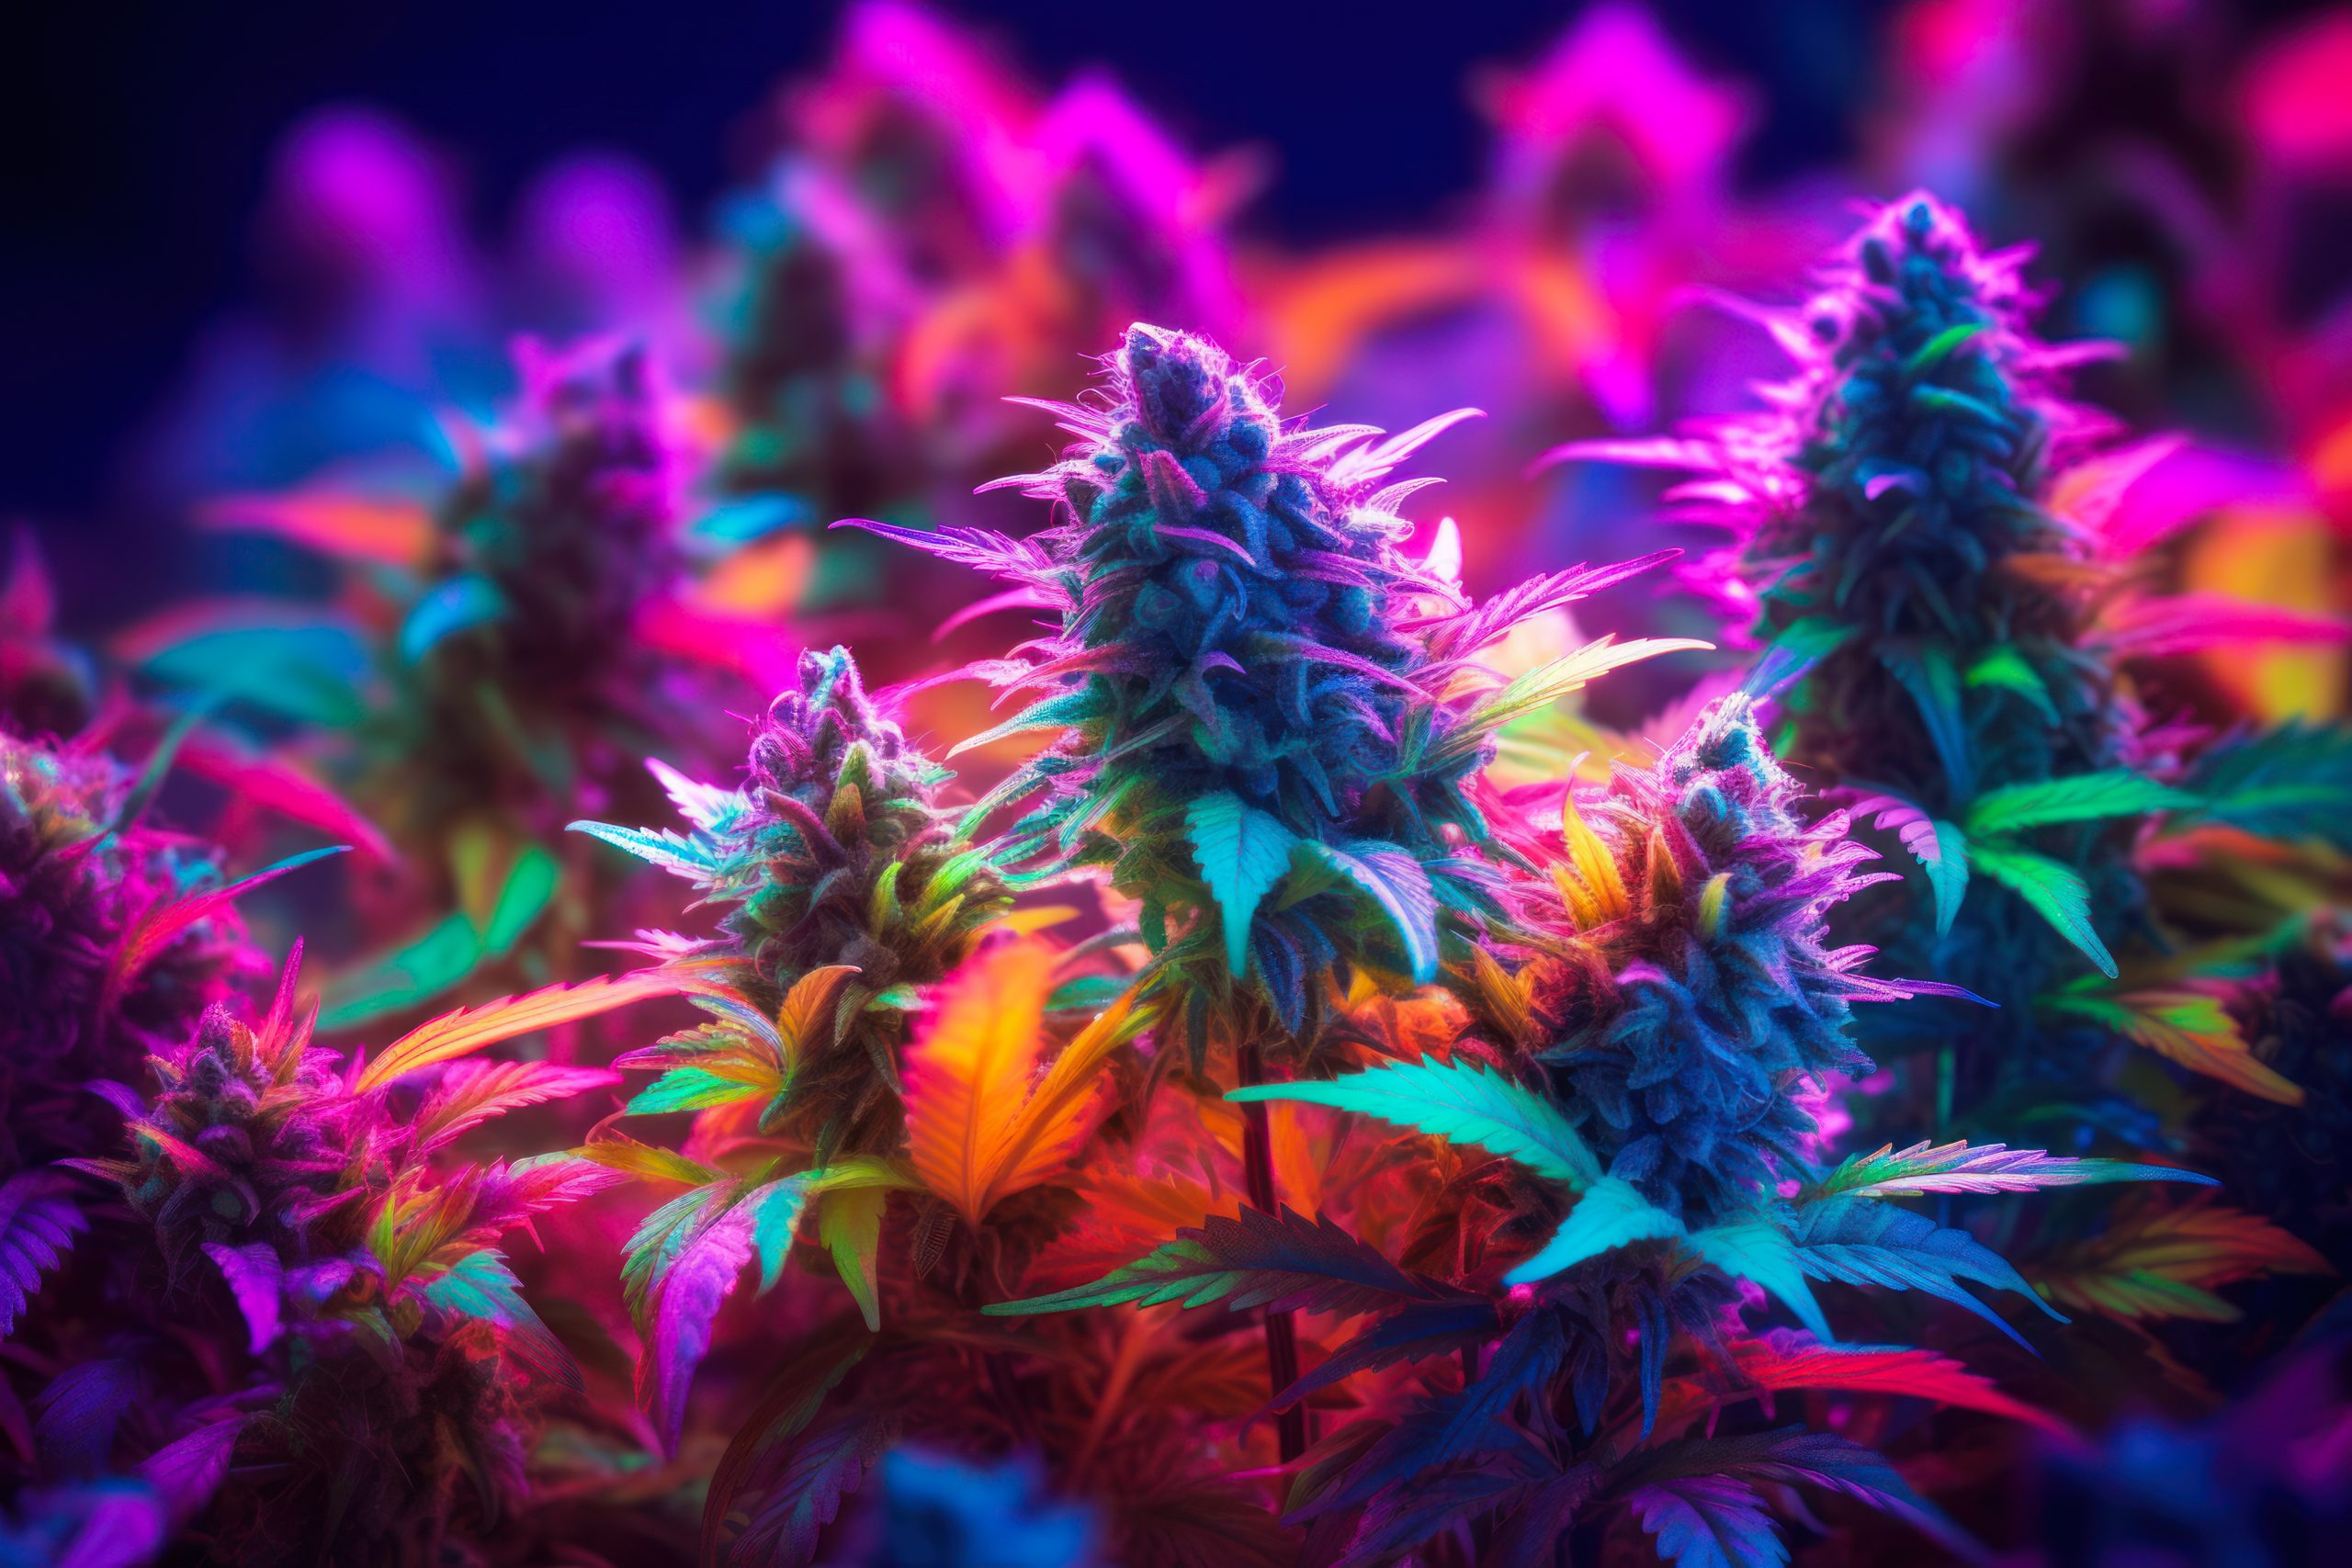 O arco-íris da cannabis – Conheça as variações coloridas da planta!